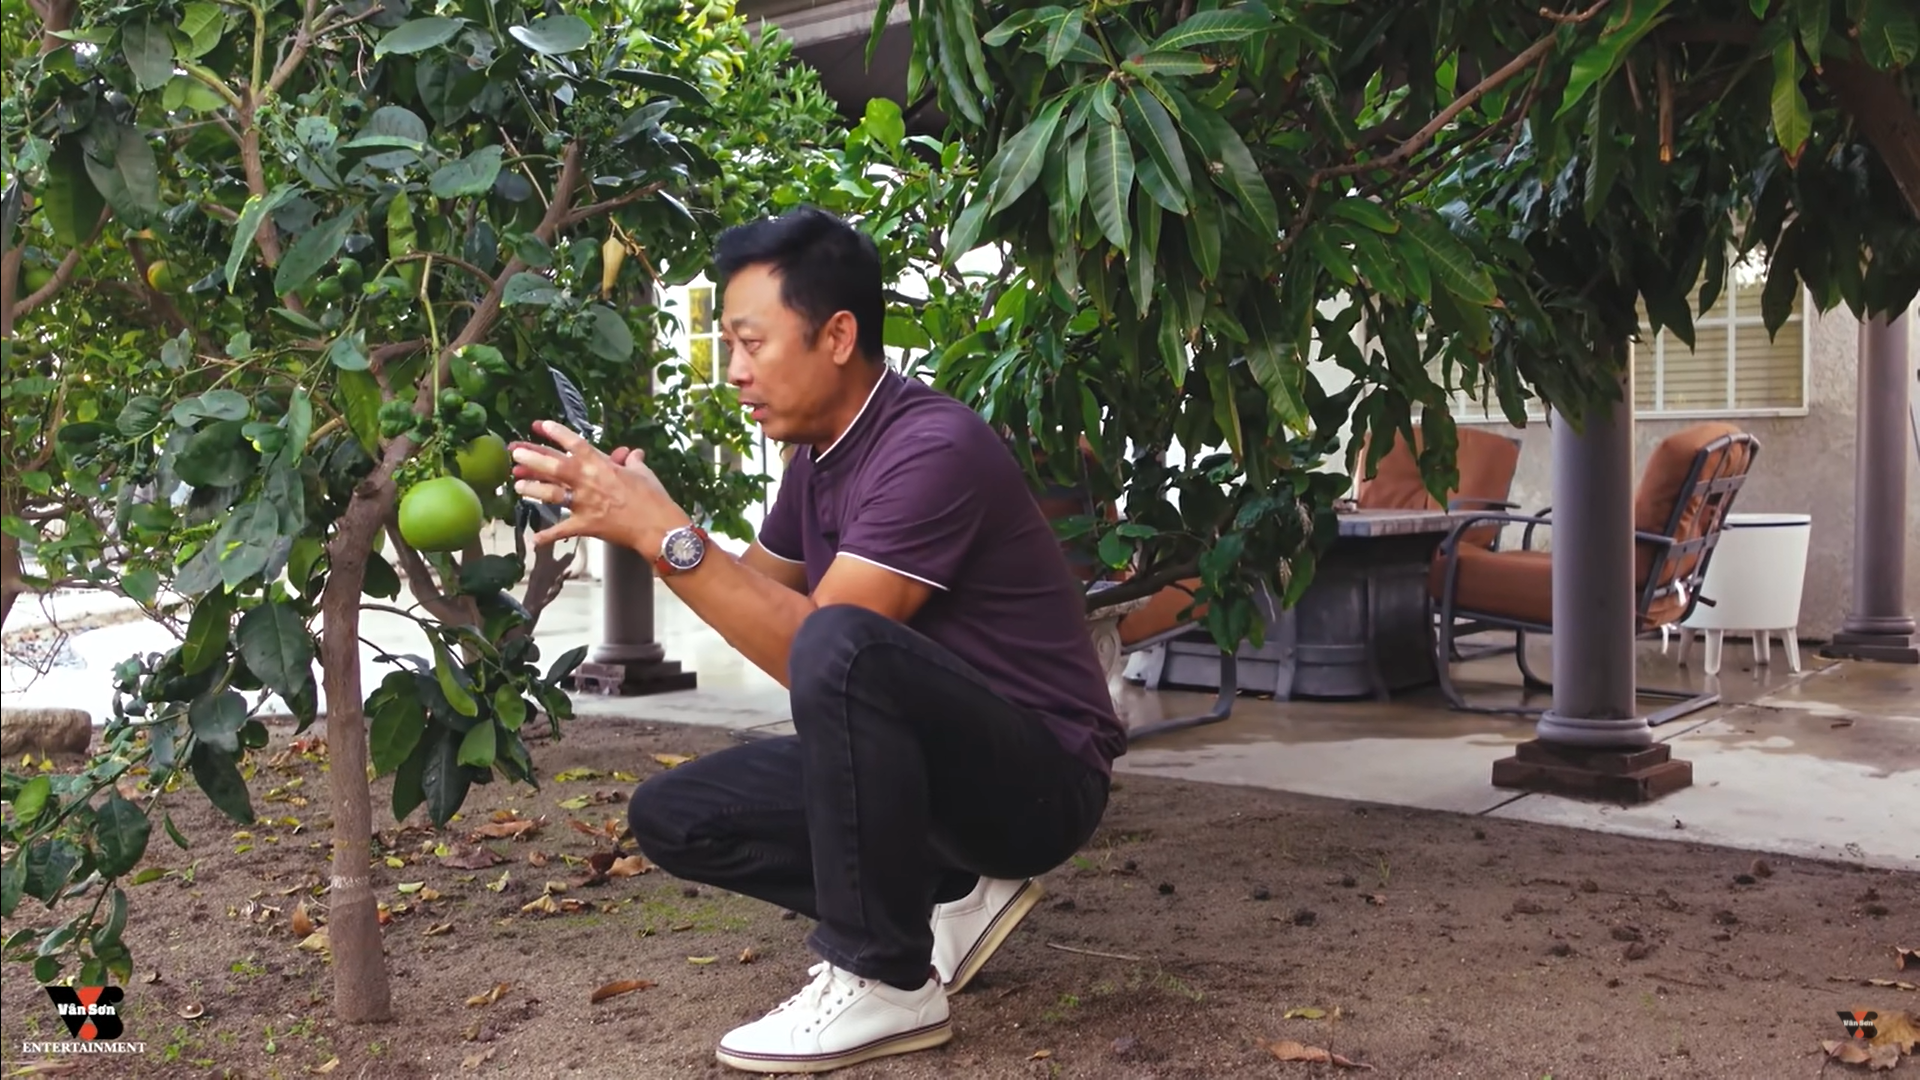 Danh hài Vân Sơn khoe vườn cây hàng trăm mét vuông, trĩu quả trong biệt thự tại Mỹ - Ảnh 4.